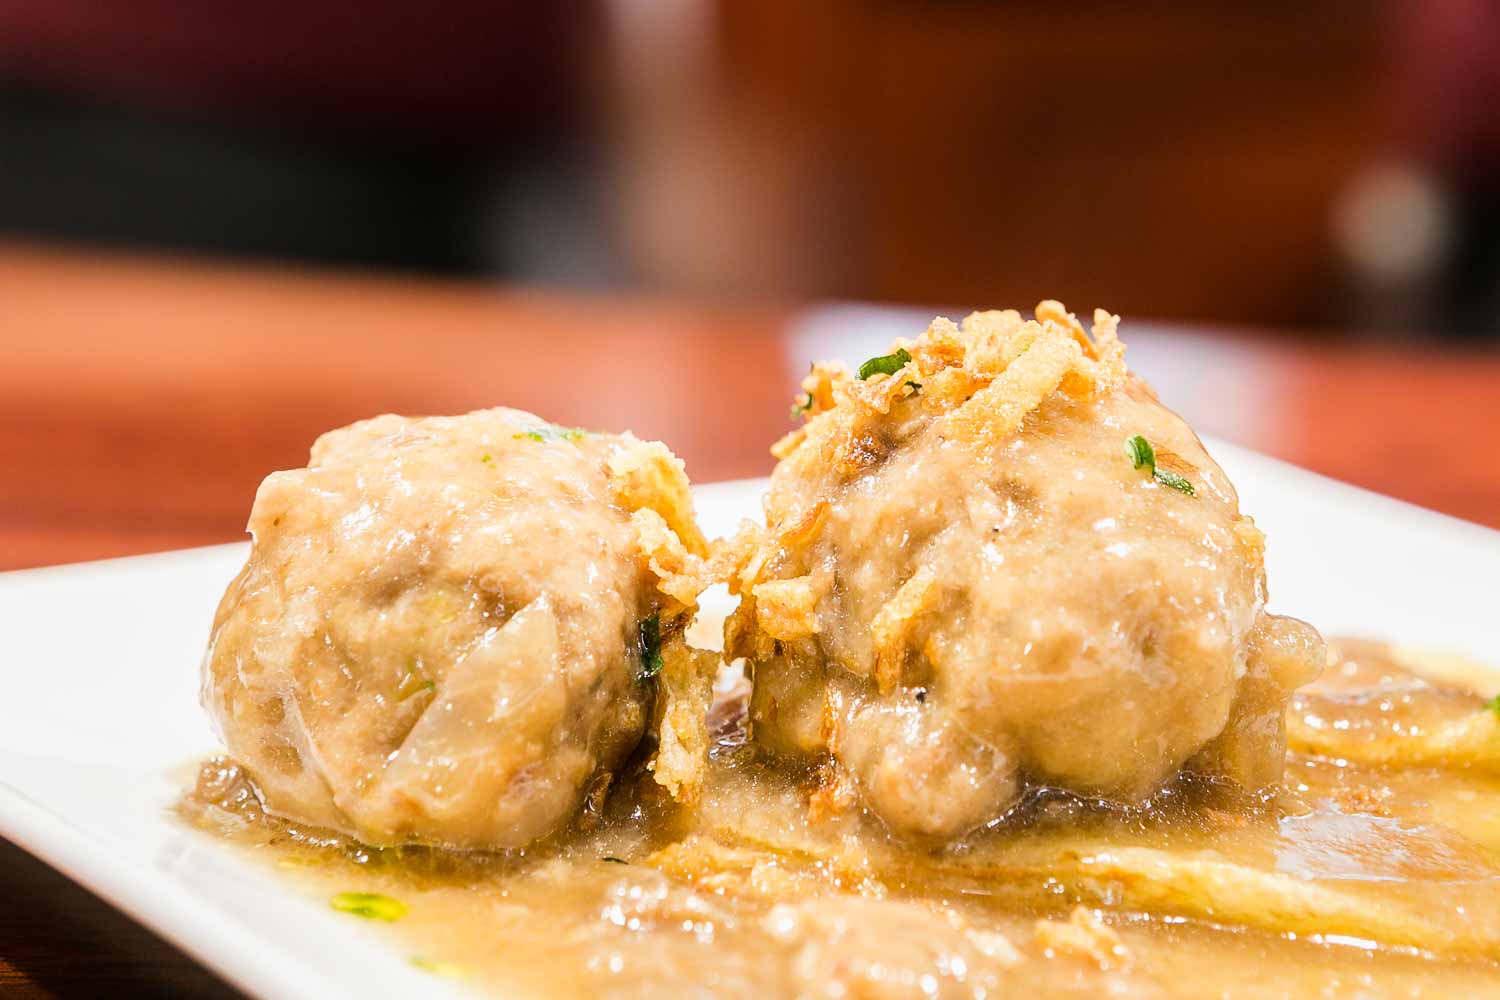 Cuttlefish meatballs or rioja style meatballs